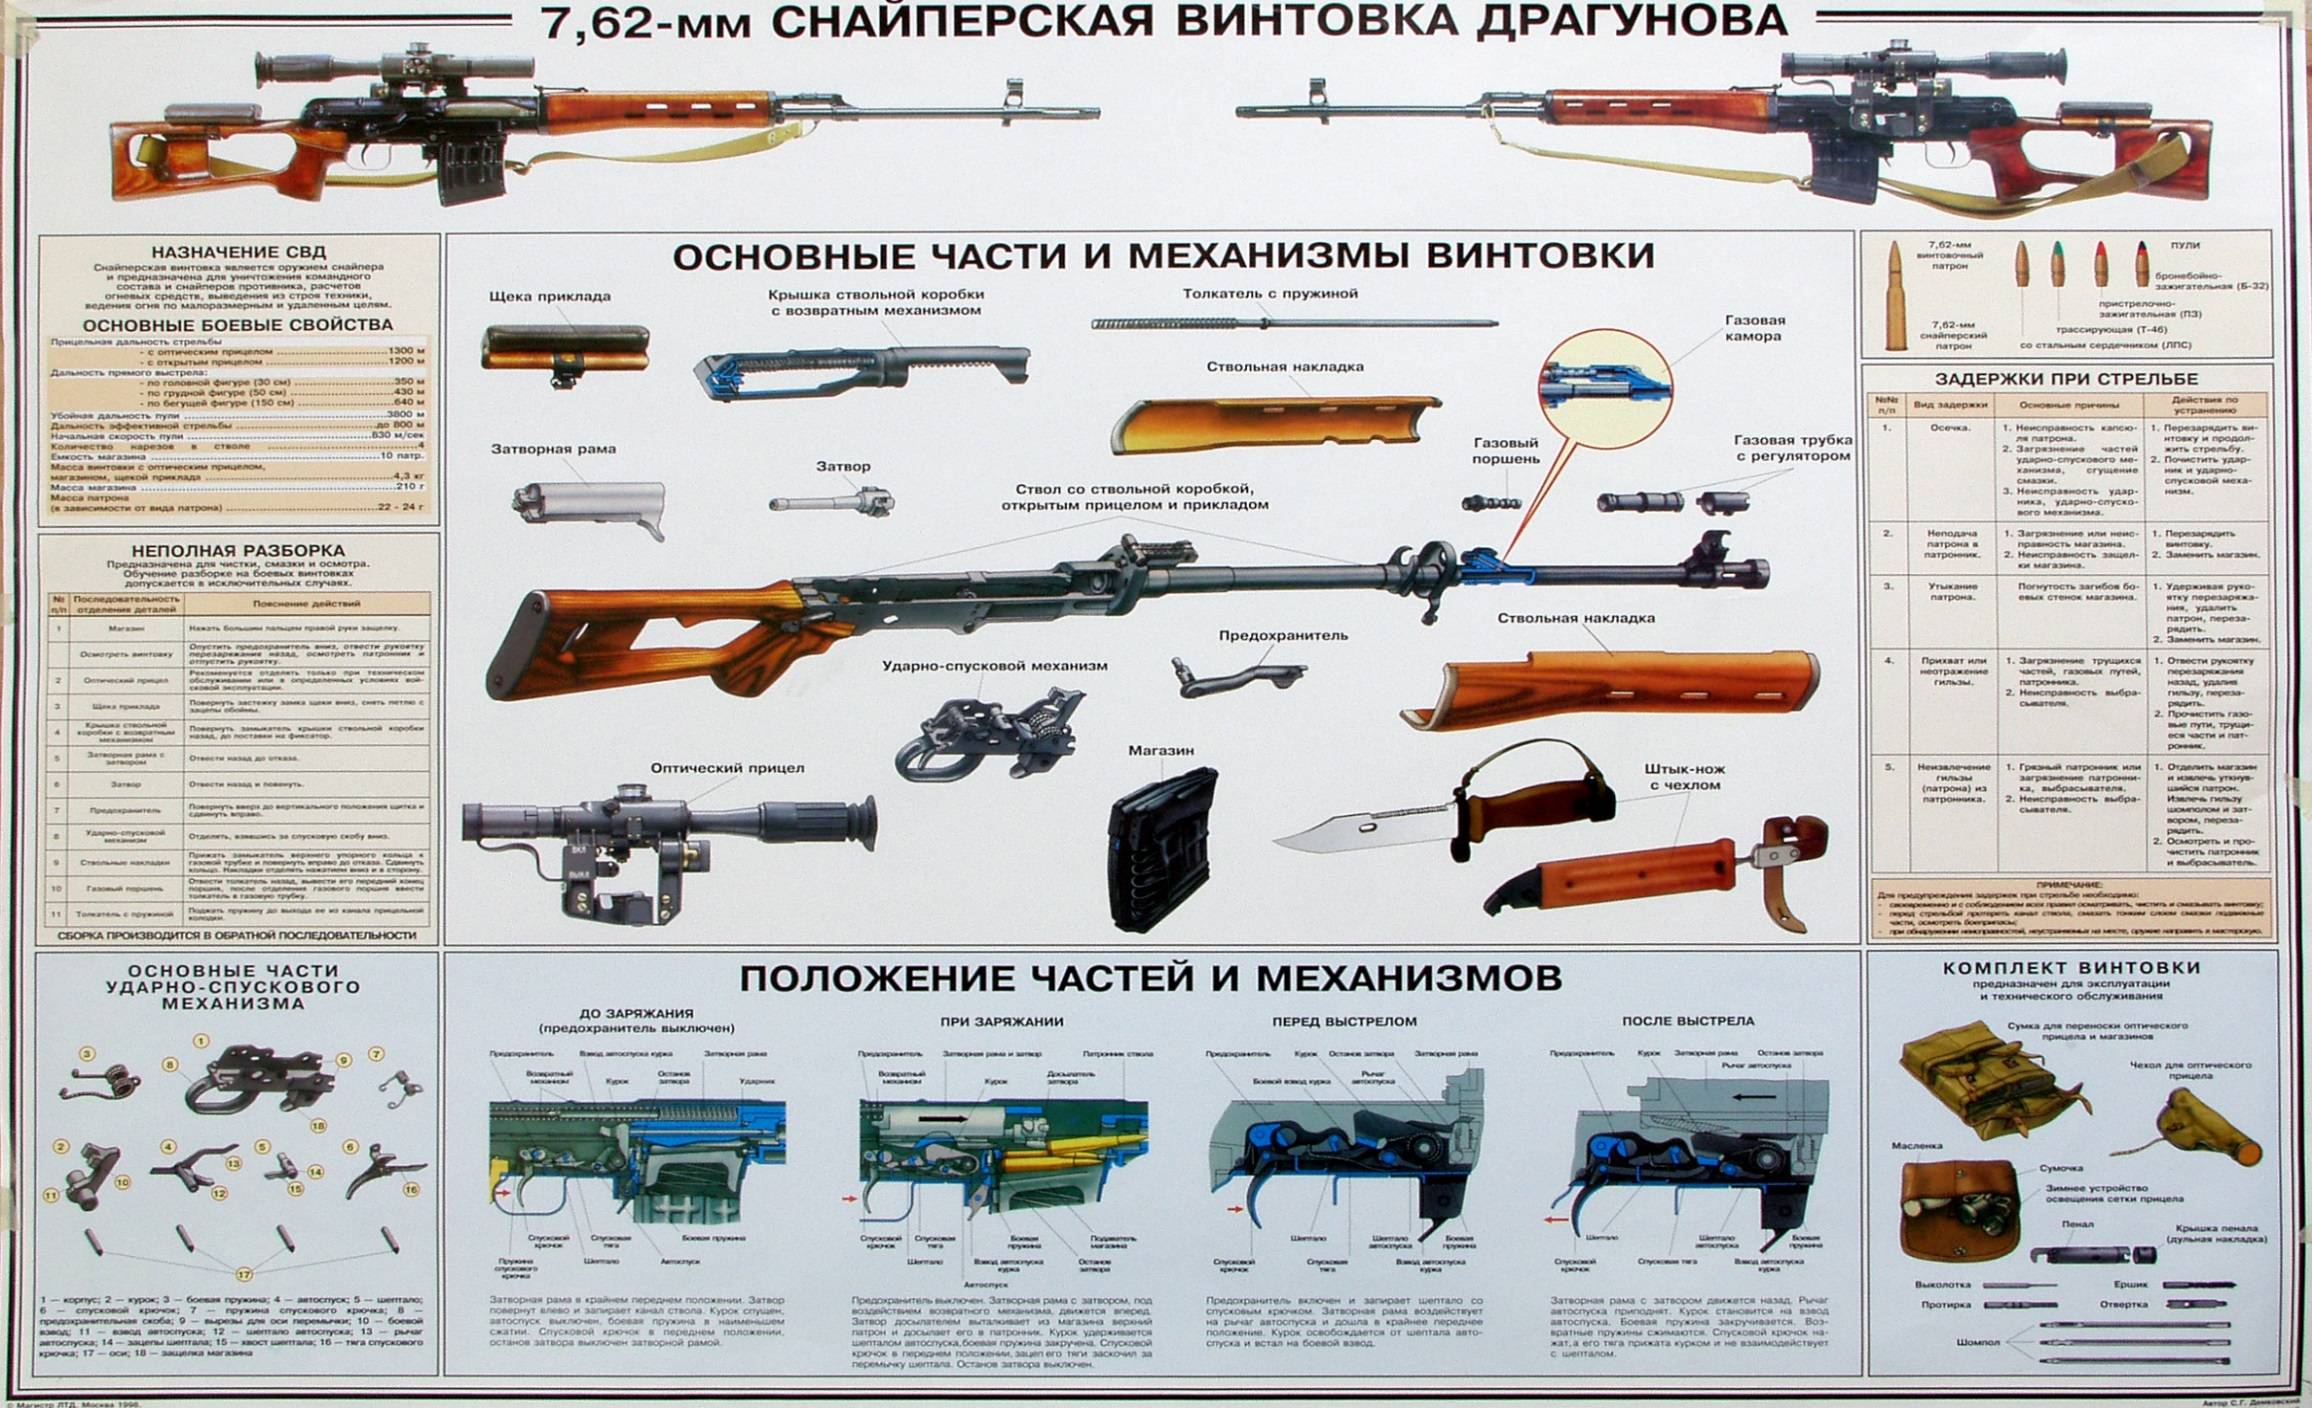 Снайперская винтовка св-98 – современная замена винтовки свд